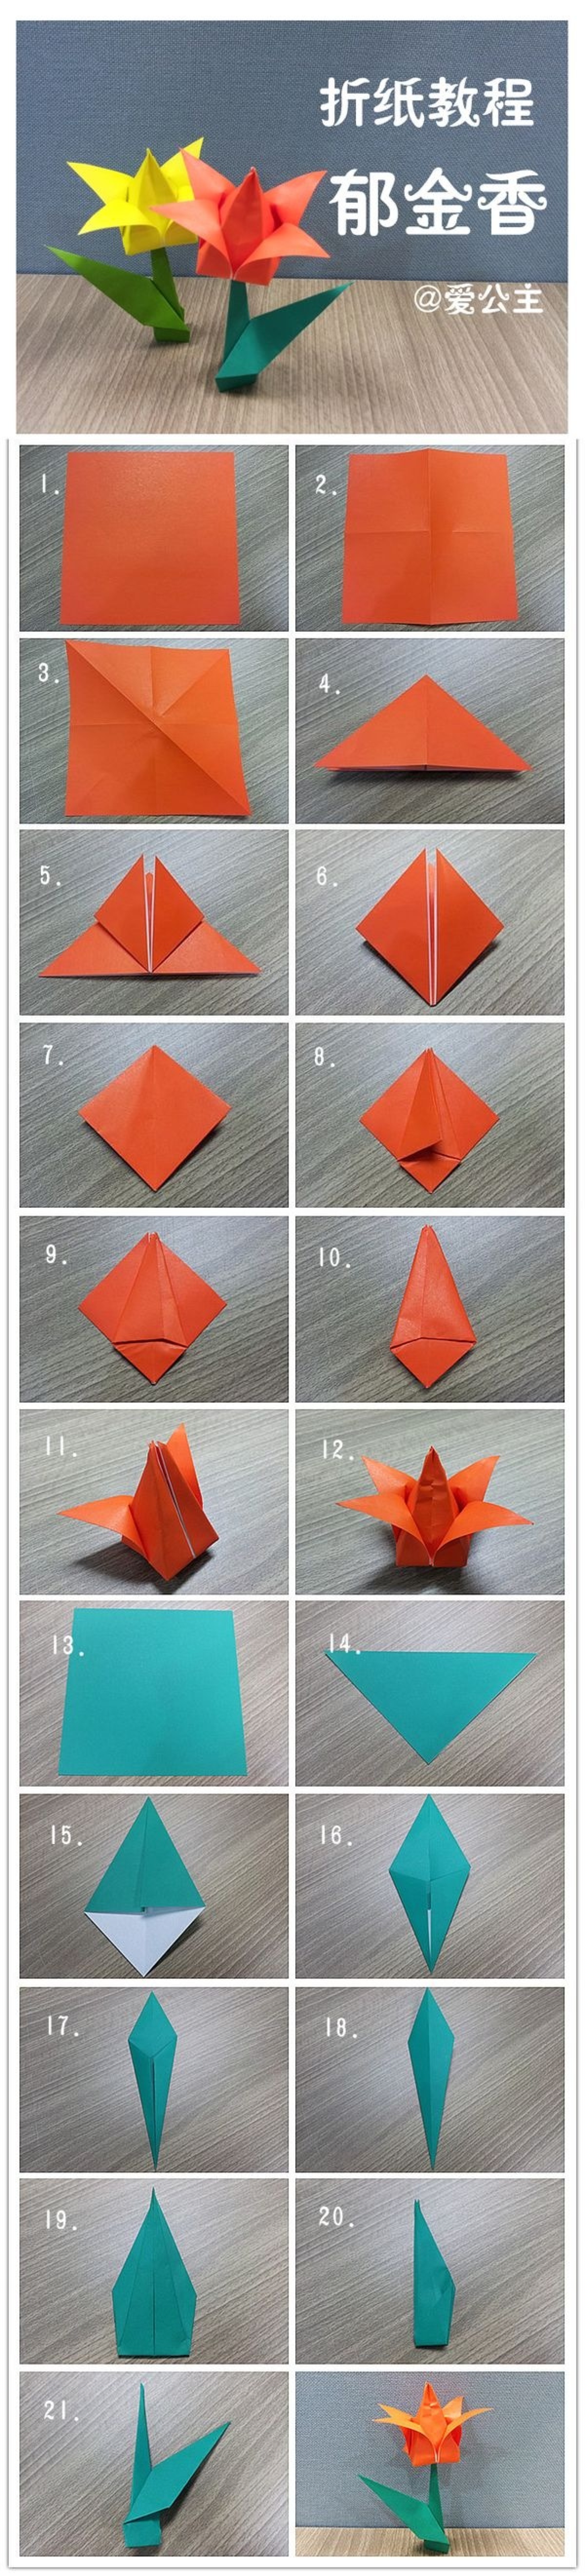 立体郁金香折法三种图片